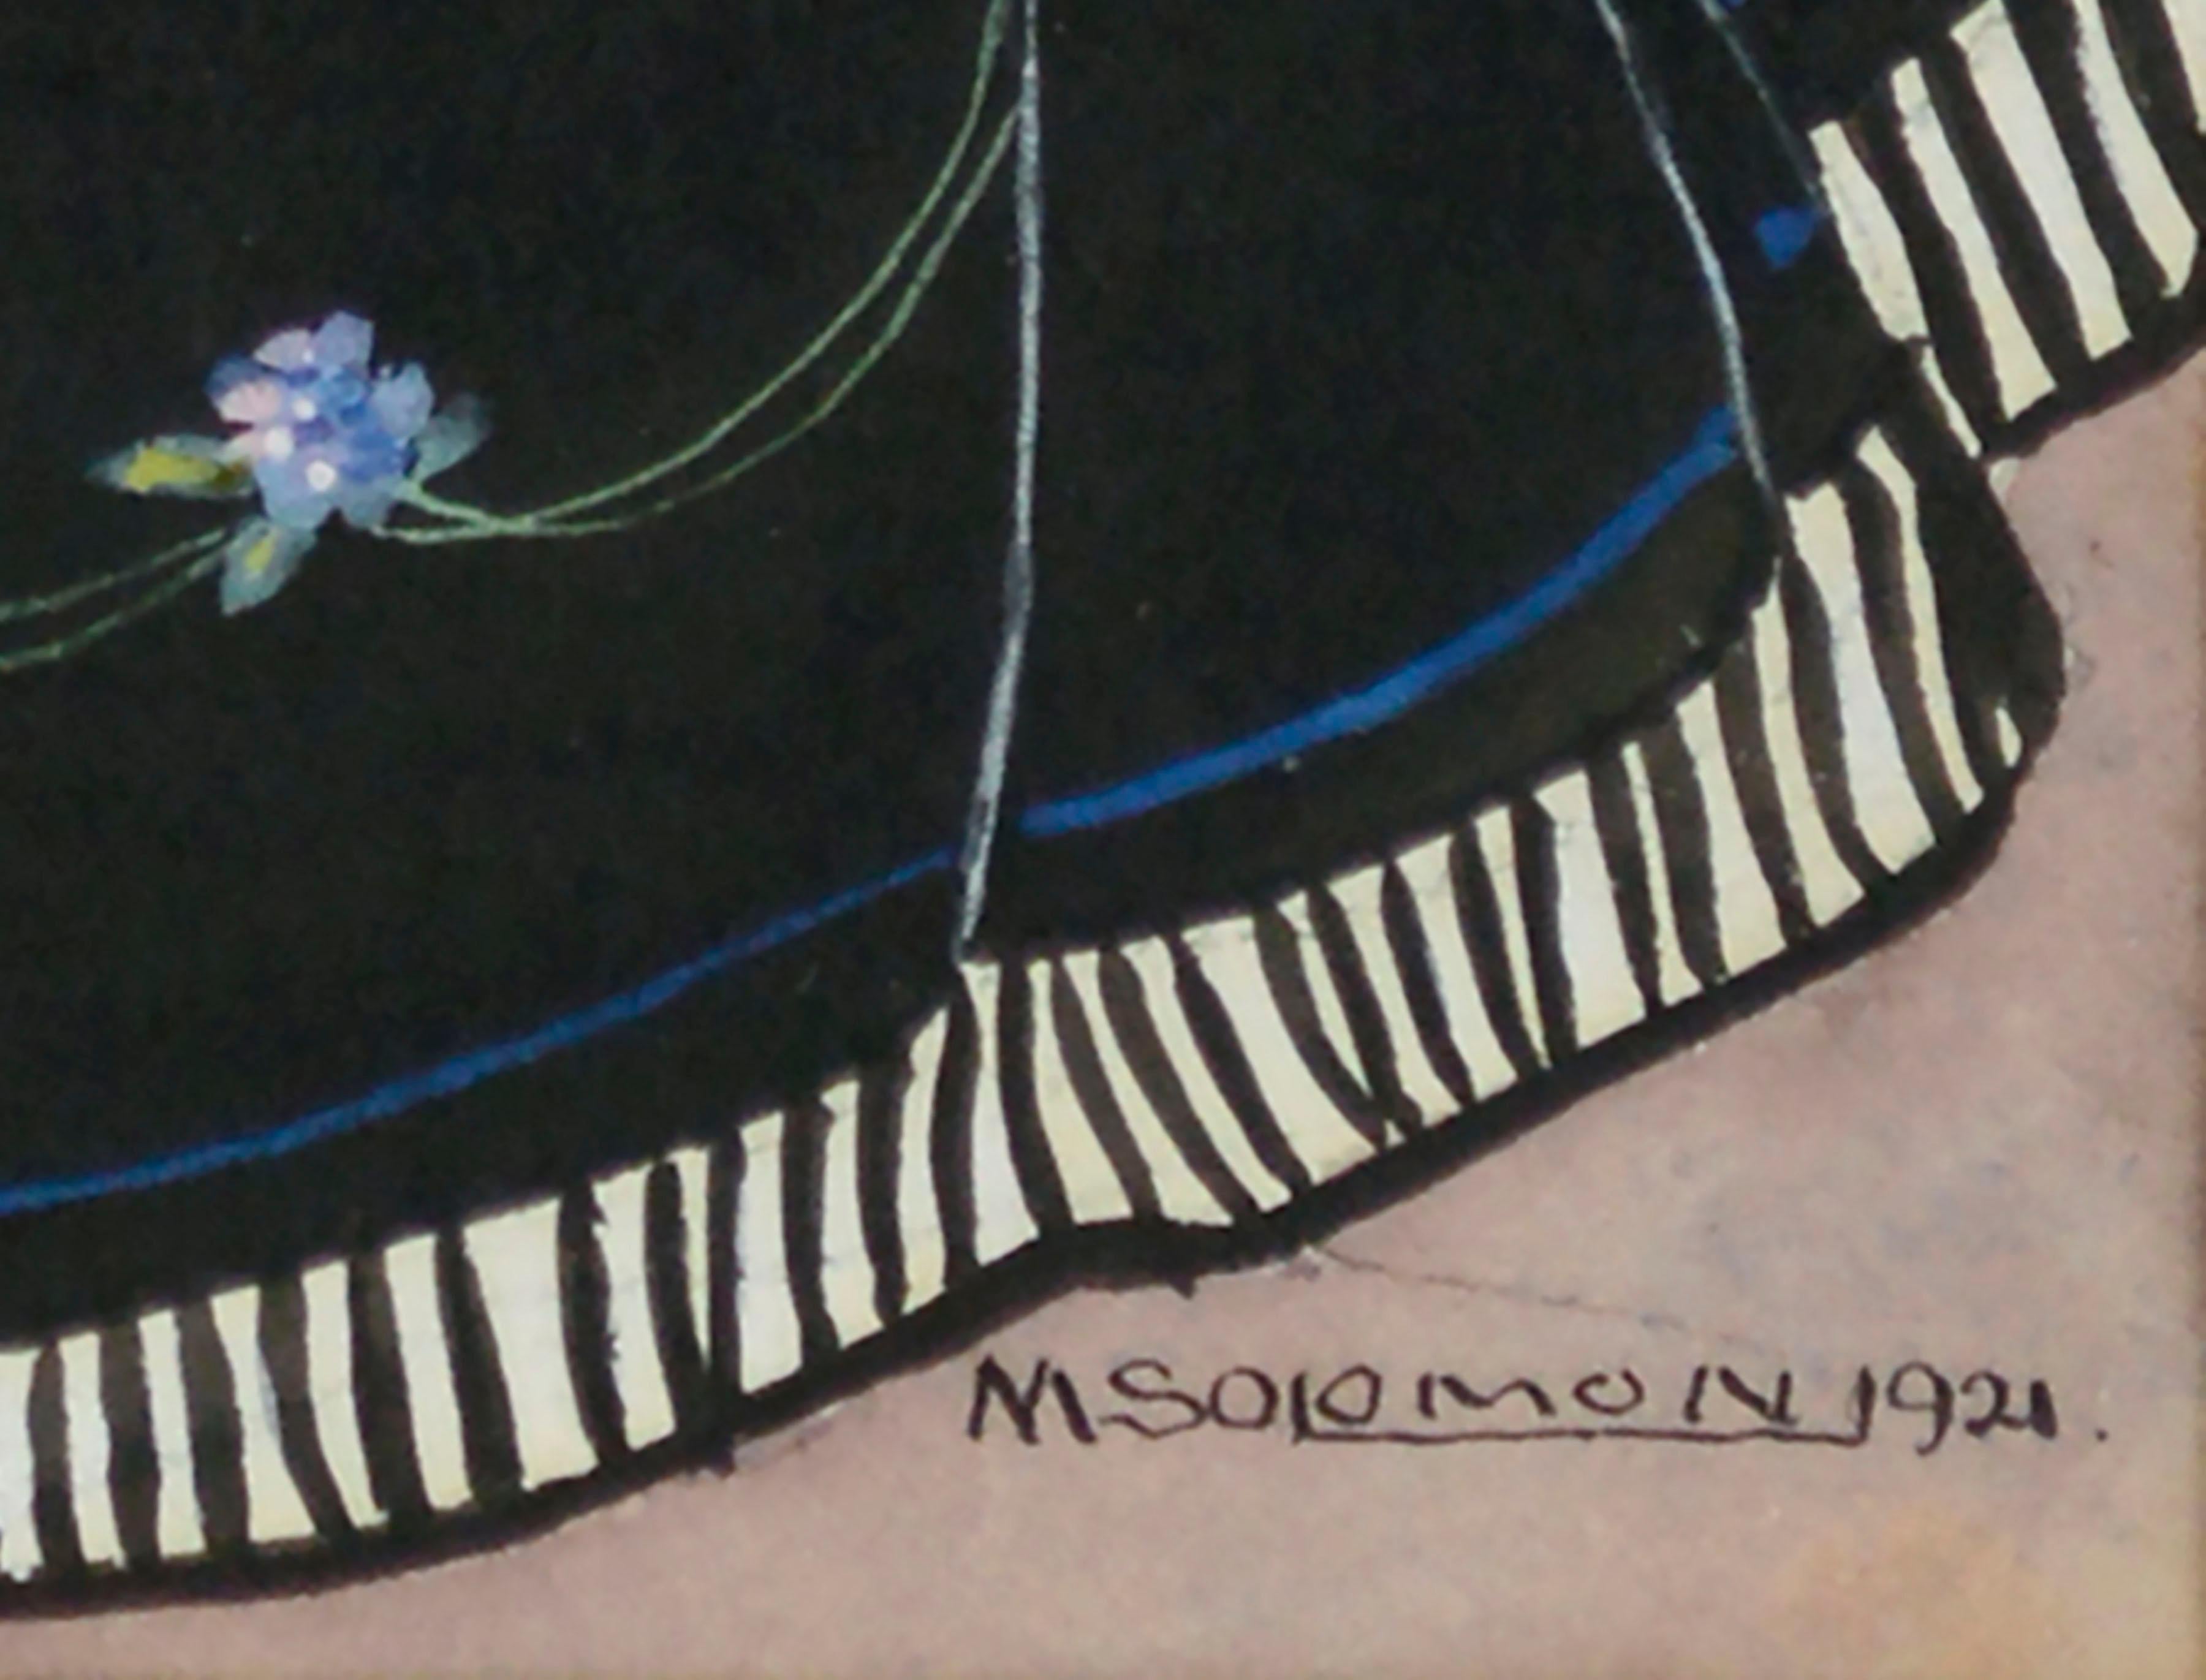 Detailgetreue historische Modeillustration in Aquarell aus dem Jahr 1921, die eine Dame in einem Kleid aus dem 17. Jahrhundert zeigt, mit einem schwarzen Reifrock, der mit kleinen blauen Blumen verziert ist, einem kleinen Mieder mit tiefem,